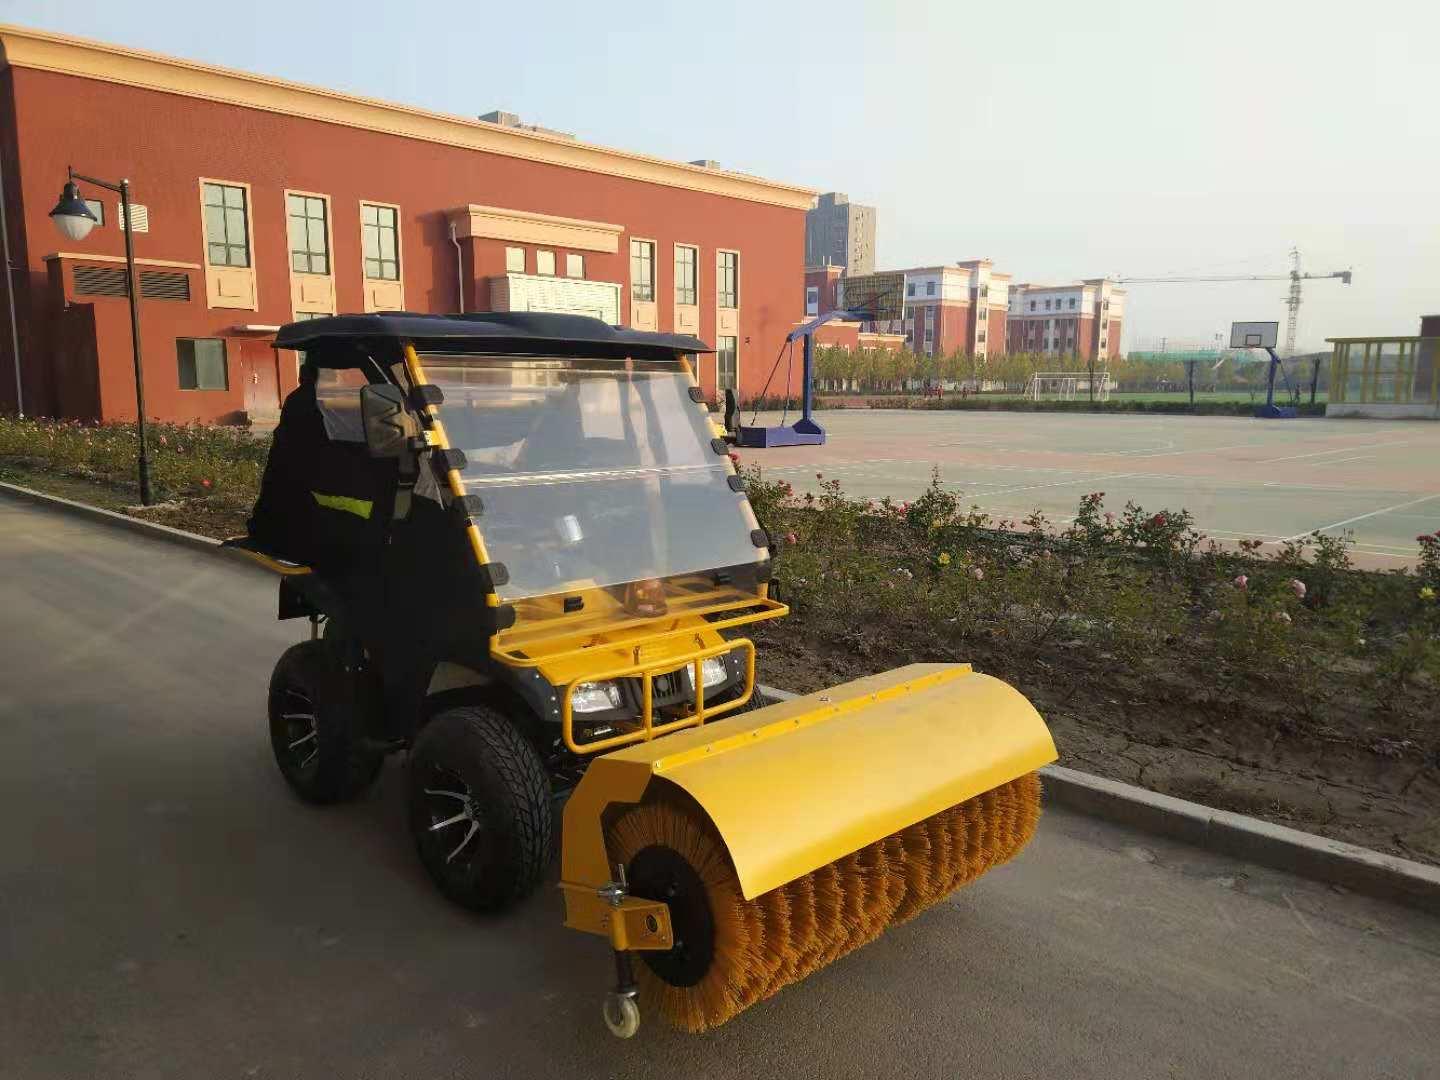  辽宁小型除雪车FH-150ATV驾驶式燃油除雪车供应